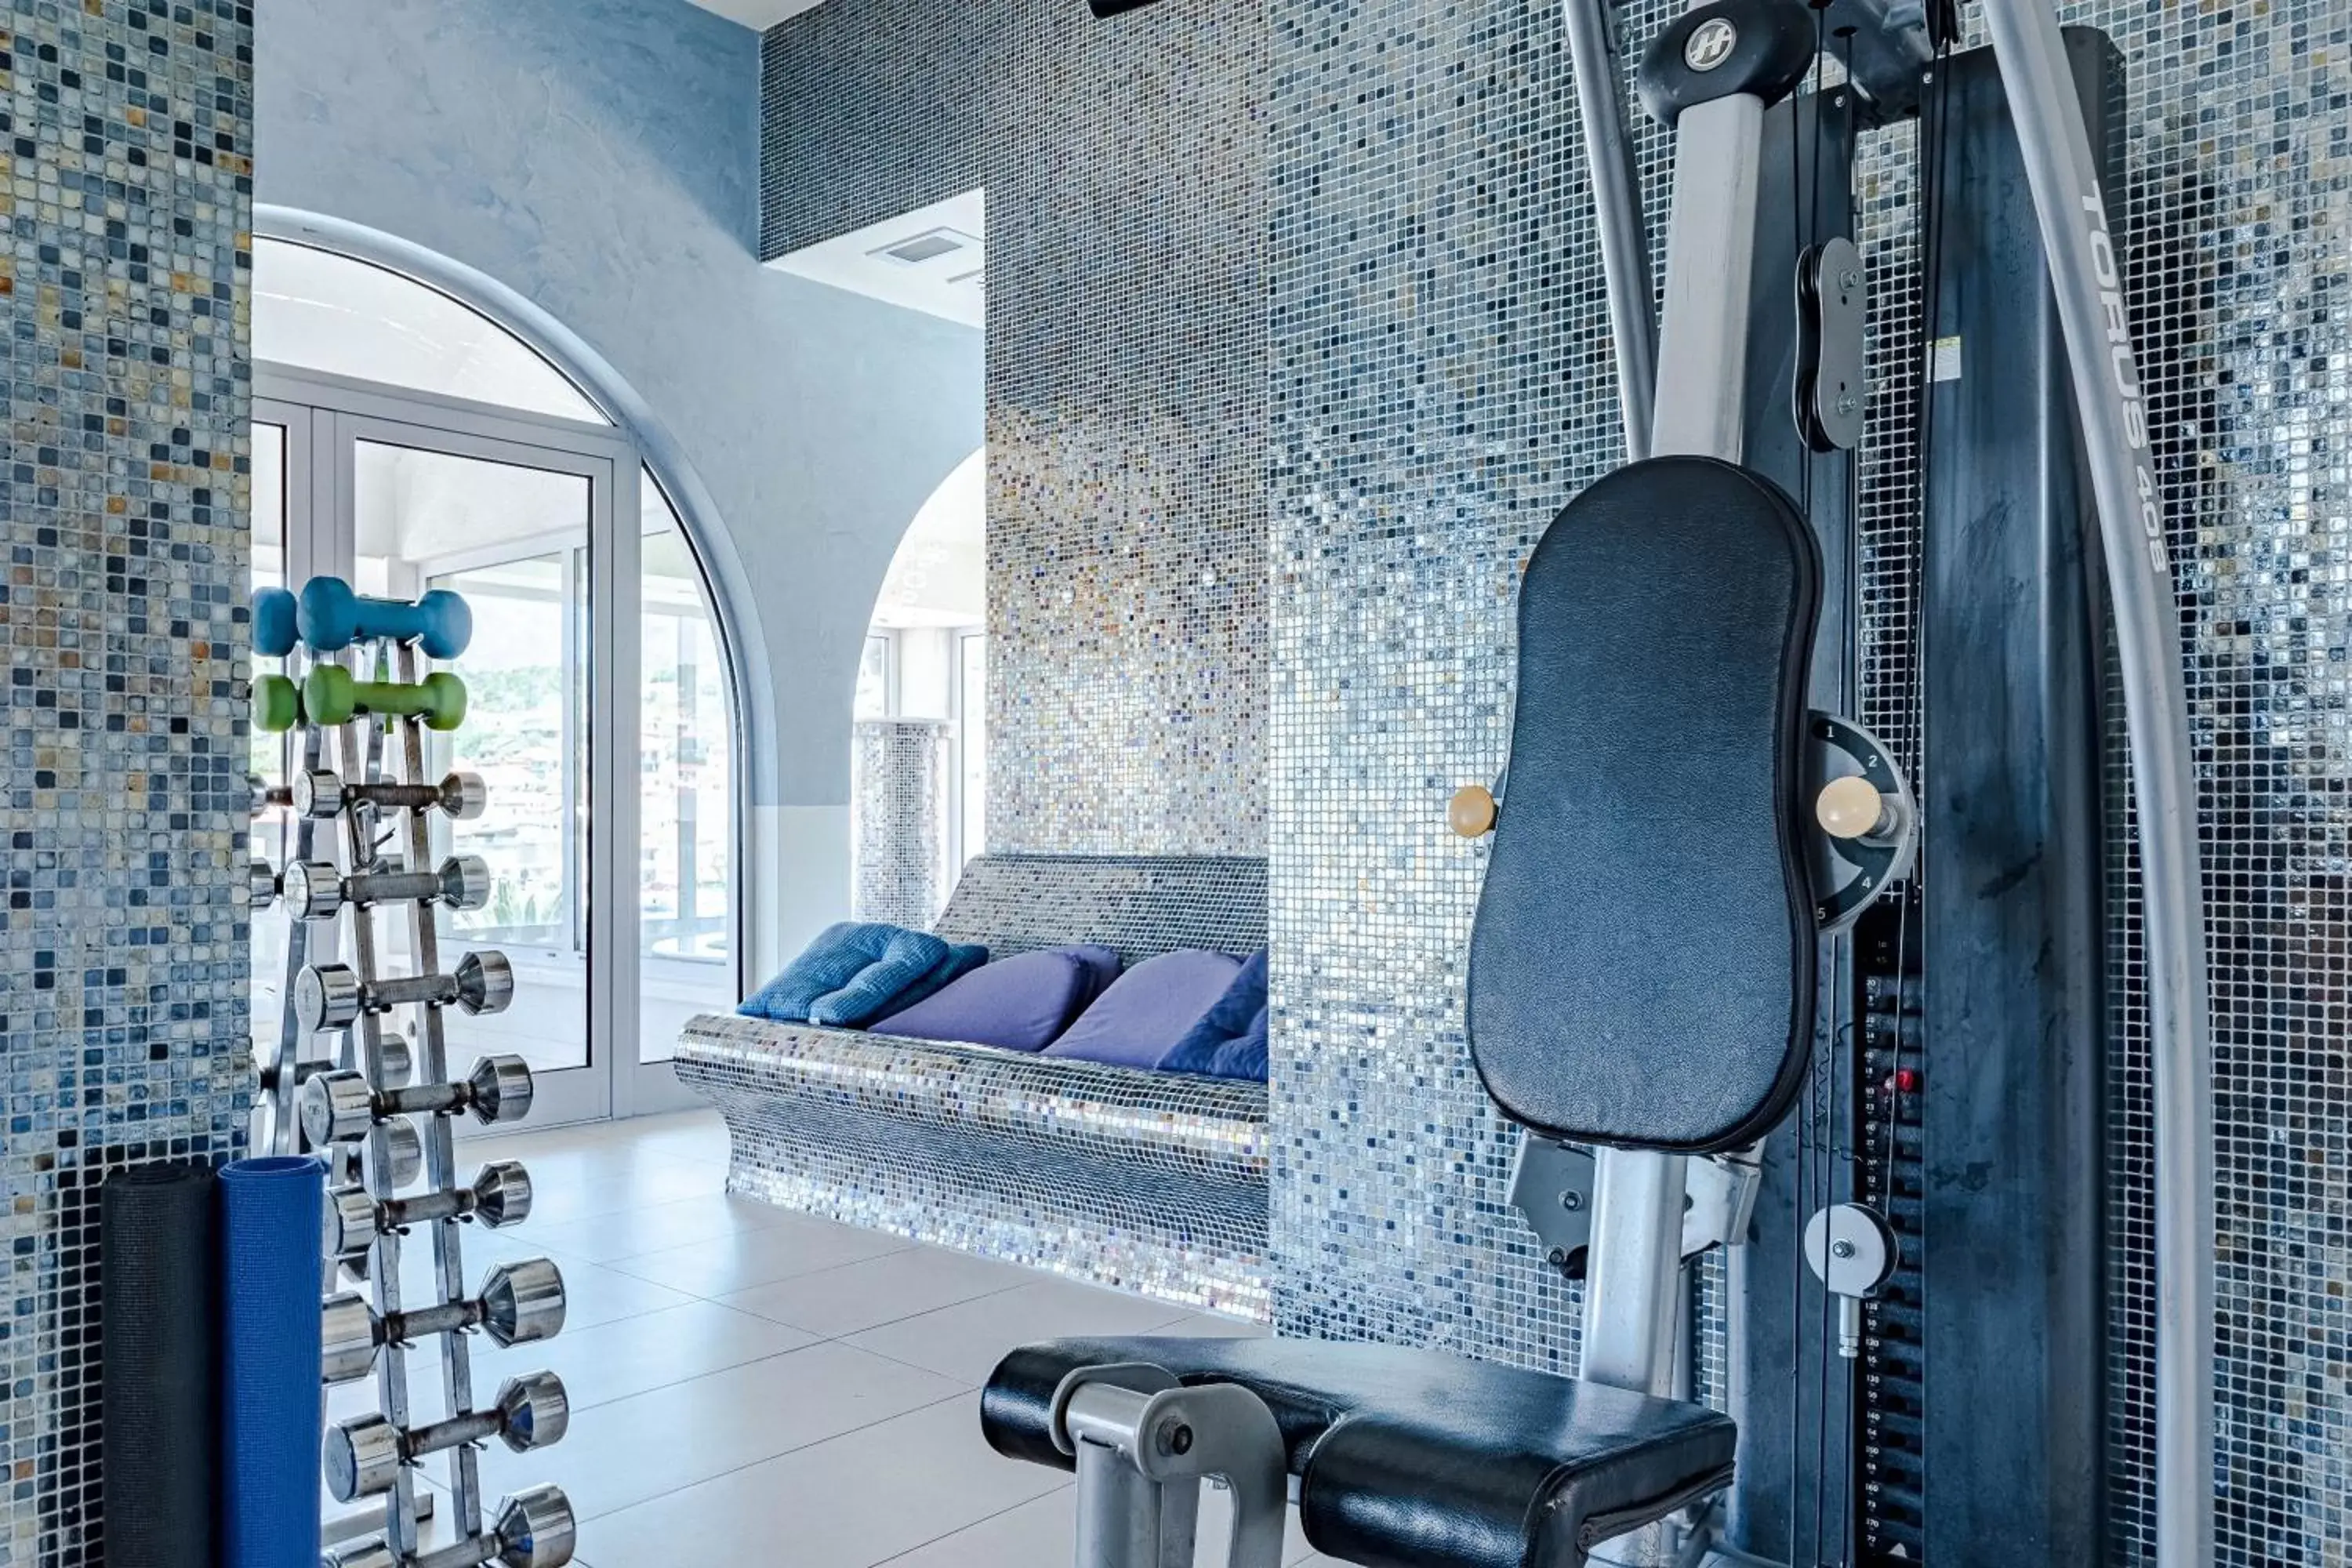 Fitness centre/facilities, Bathroom in Hotel Korkyra